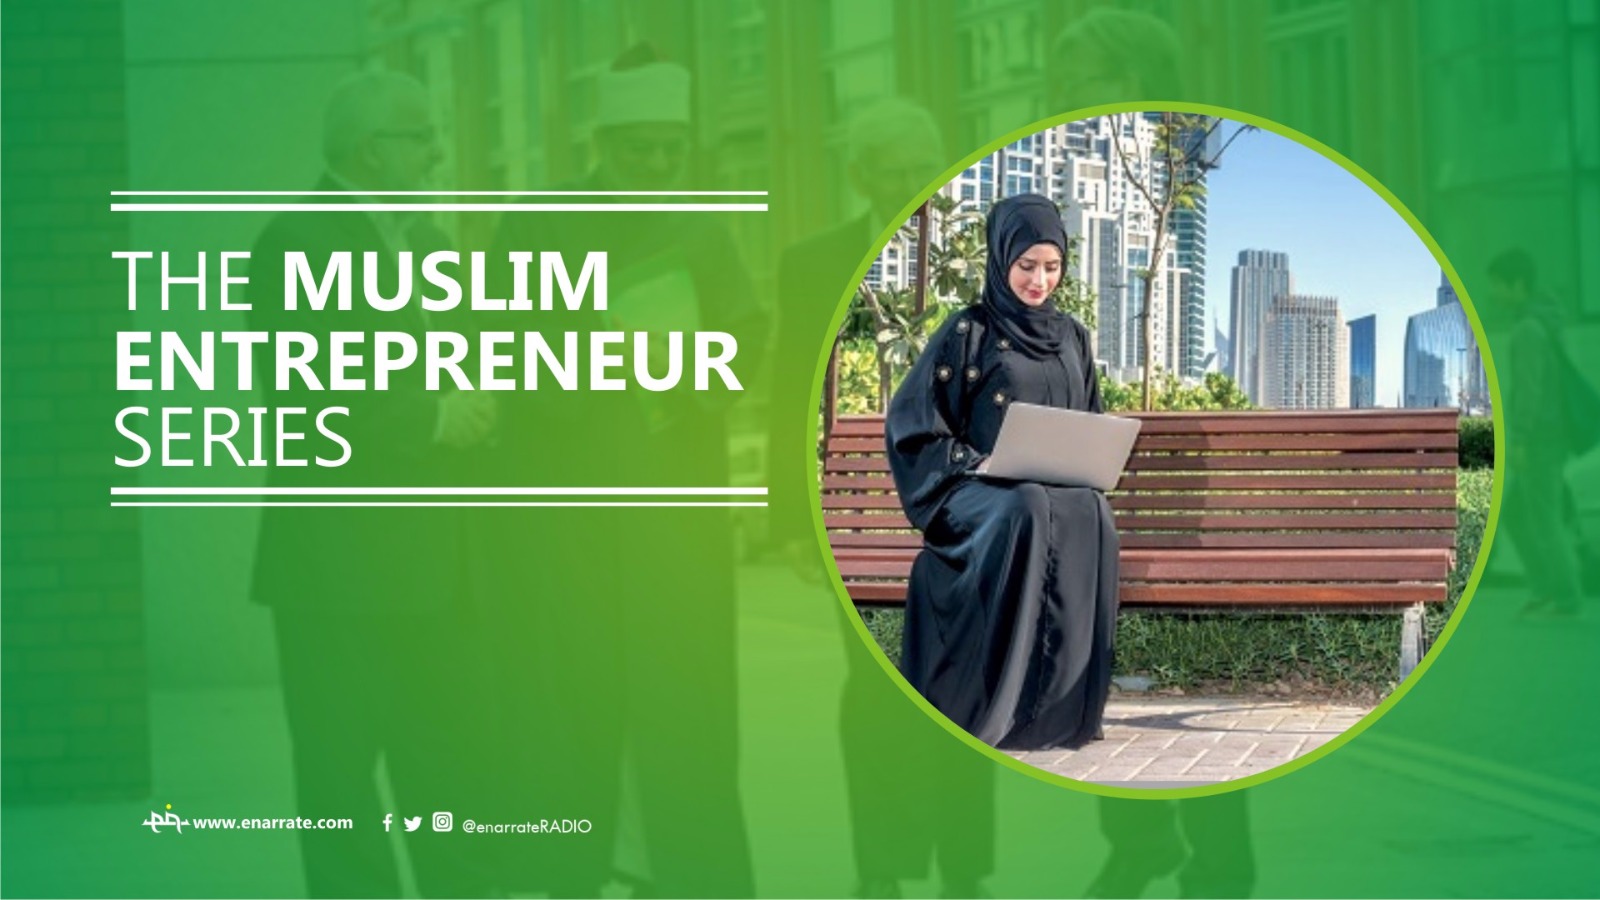 The Muslim Entrepreneur Series